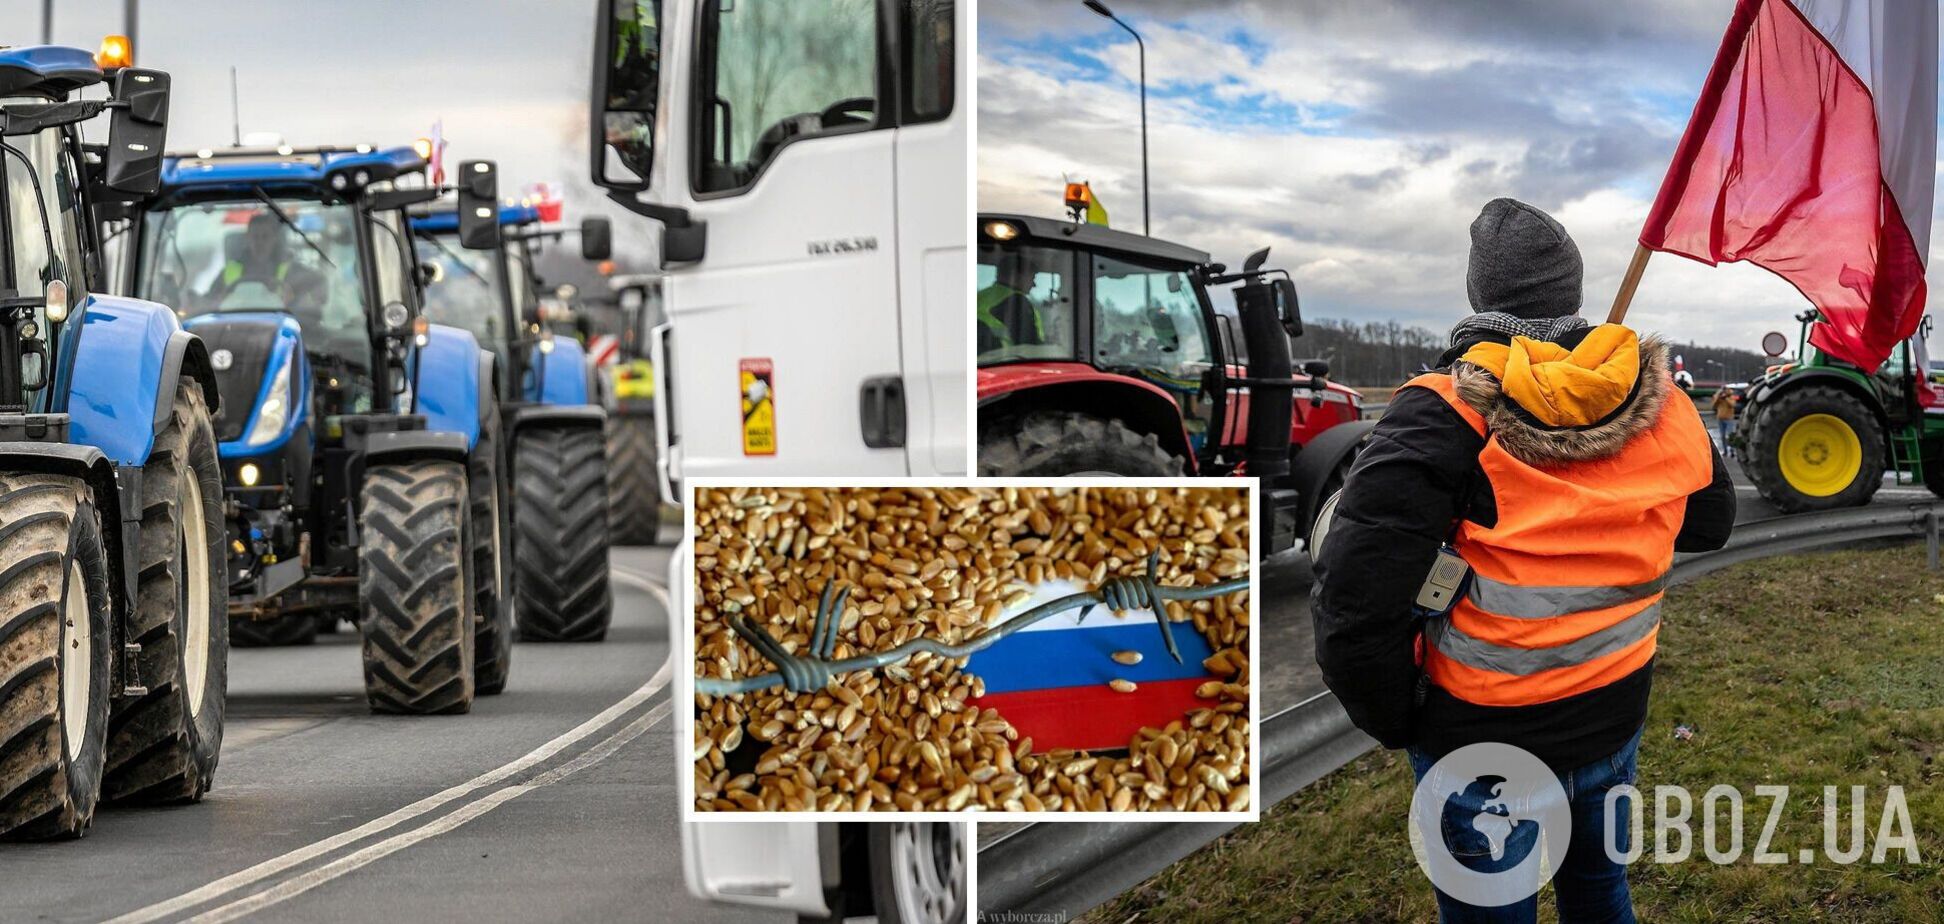 Часть требований польских фермеров играет на руку России